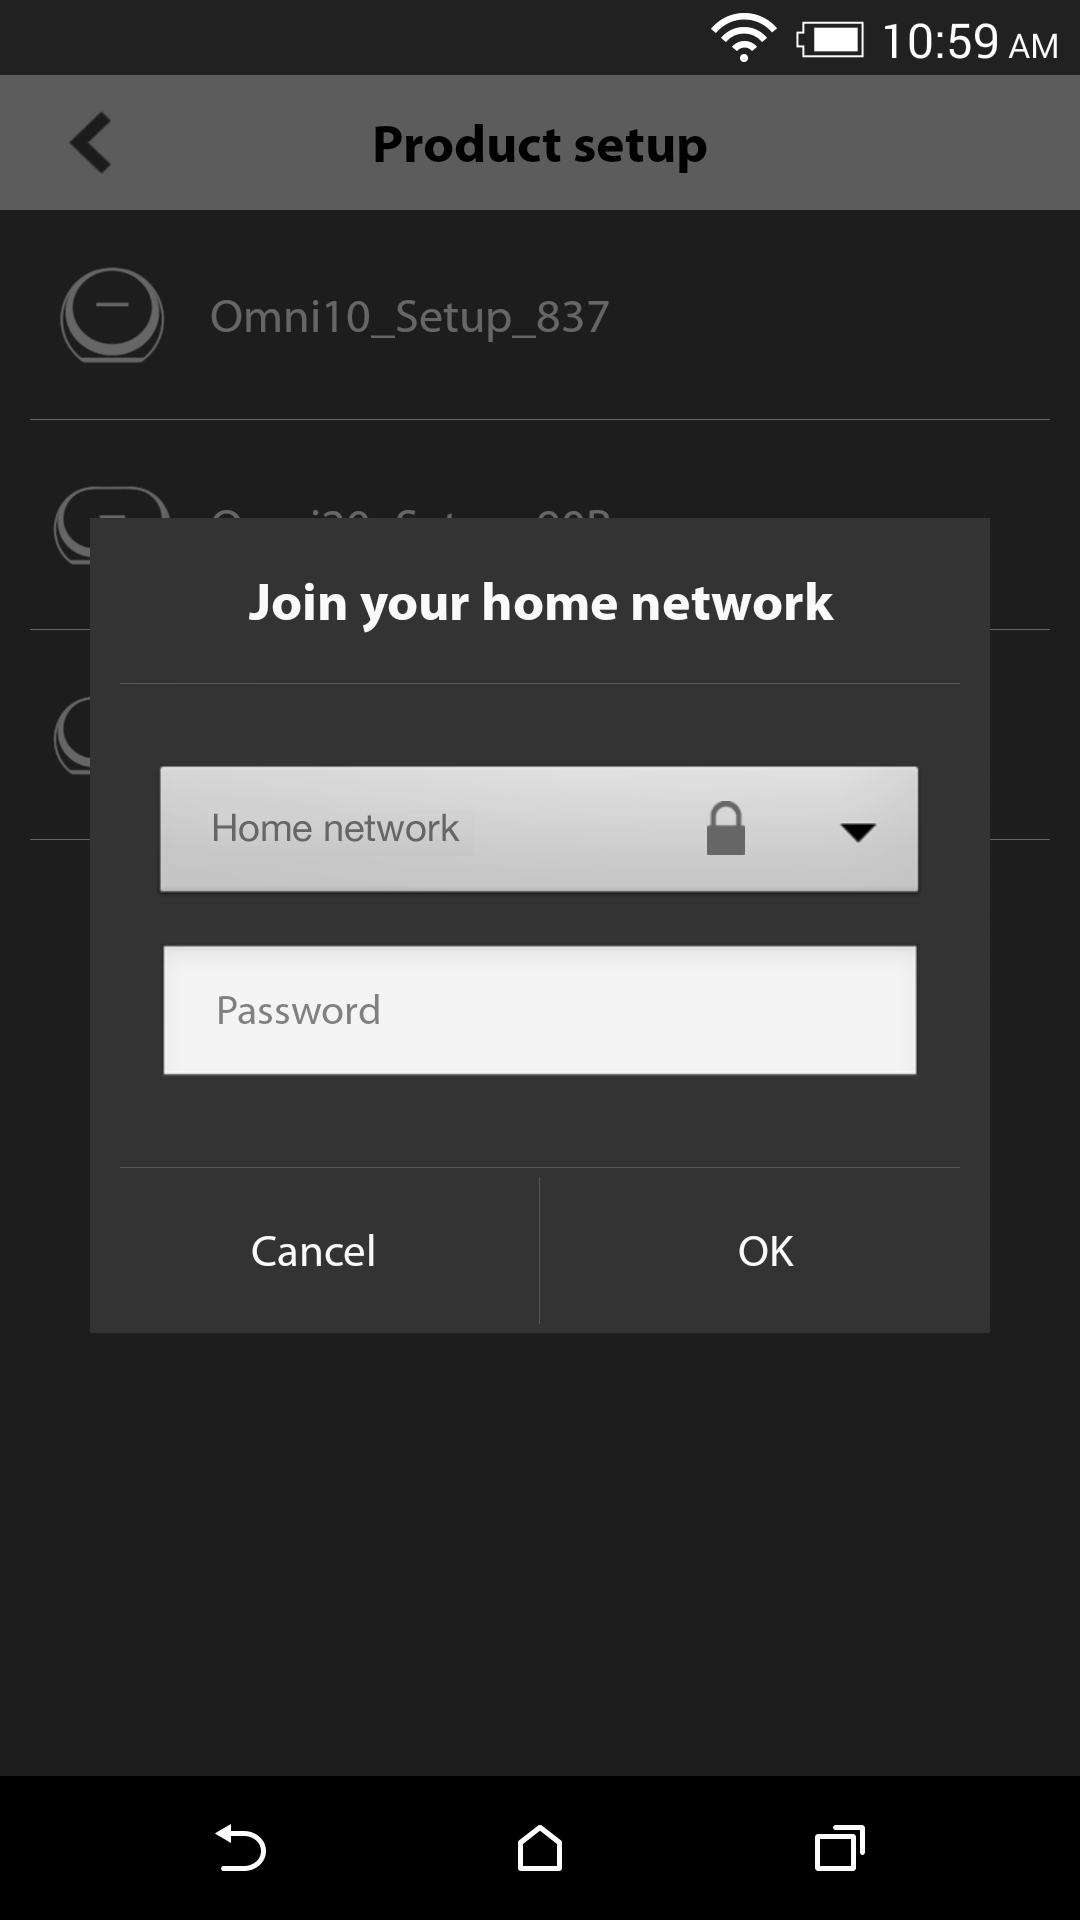 Valitse kotiverkkosi käytettävissä olevien verkkojen pudotusvalikosta. Sen jälkeen valitse tyhjä rivi ja kirjoita siihen kotiverkkosi salasana. Kun olet valmis, valitse "Done" (Valmis) -painike.